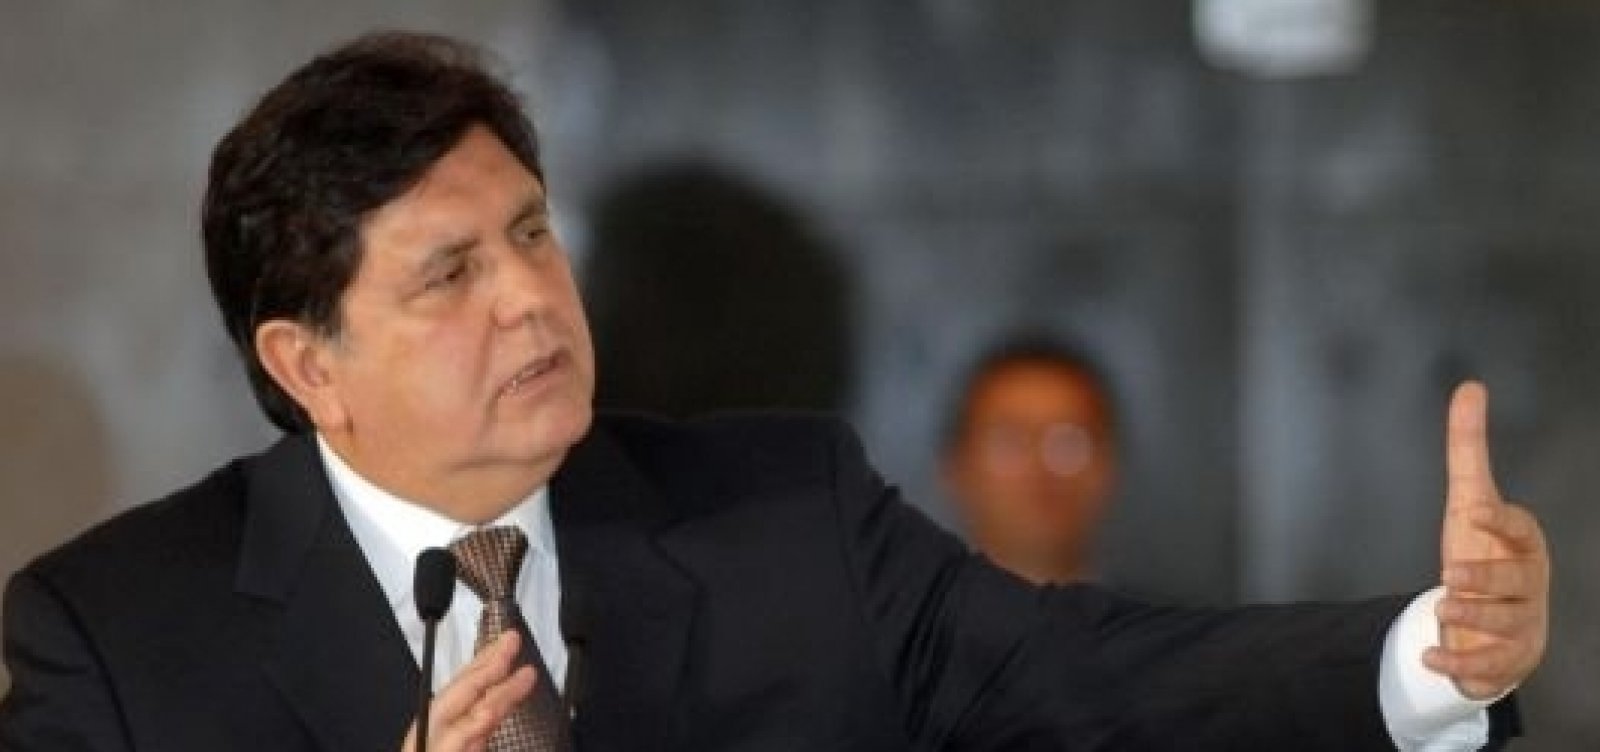 Envolvido em escândalo, ex-presidente do Peru pede asilo político no Uruguai